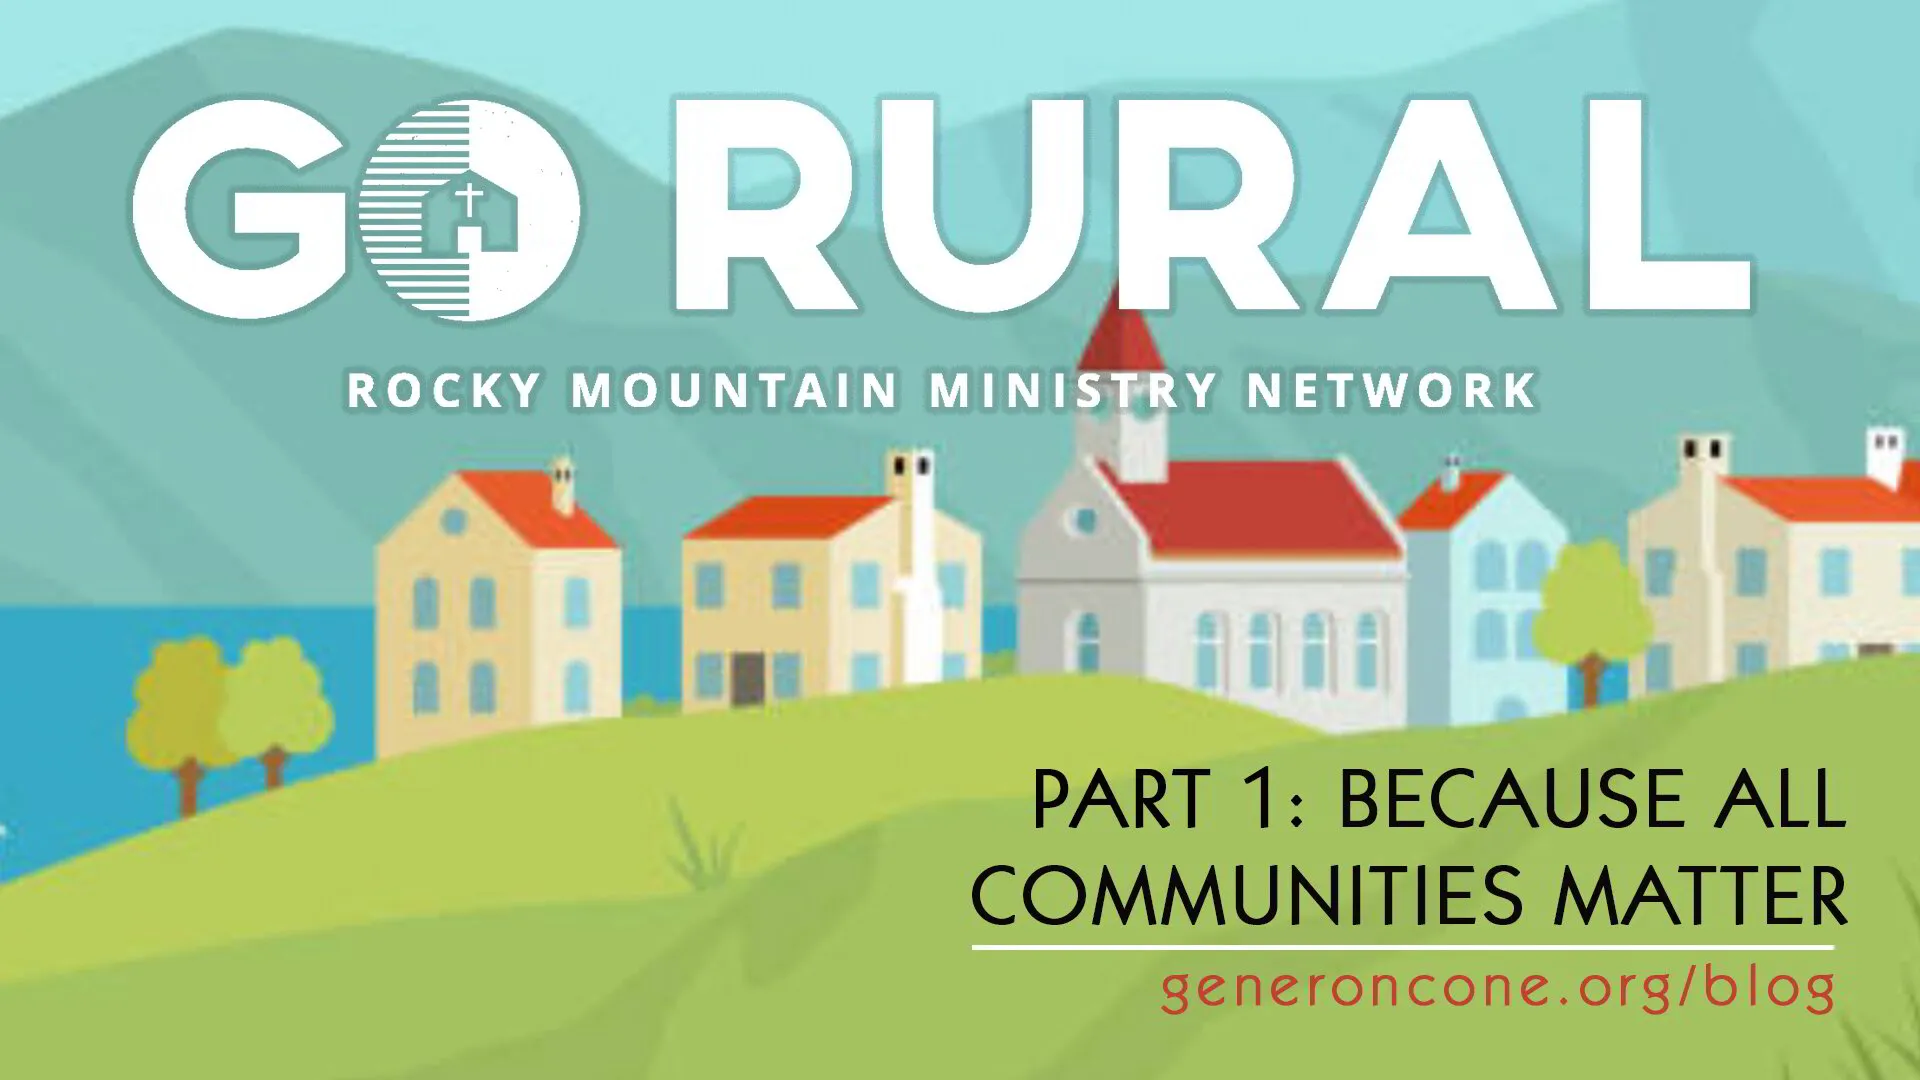 Go Rural, Part 1: Because All Communities Matter